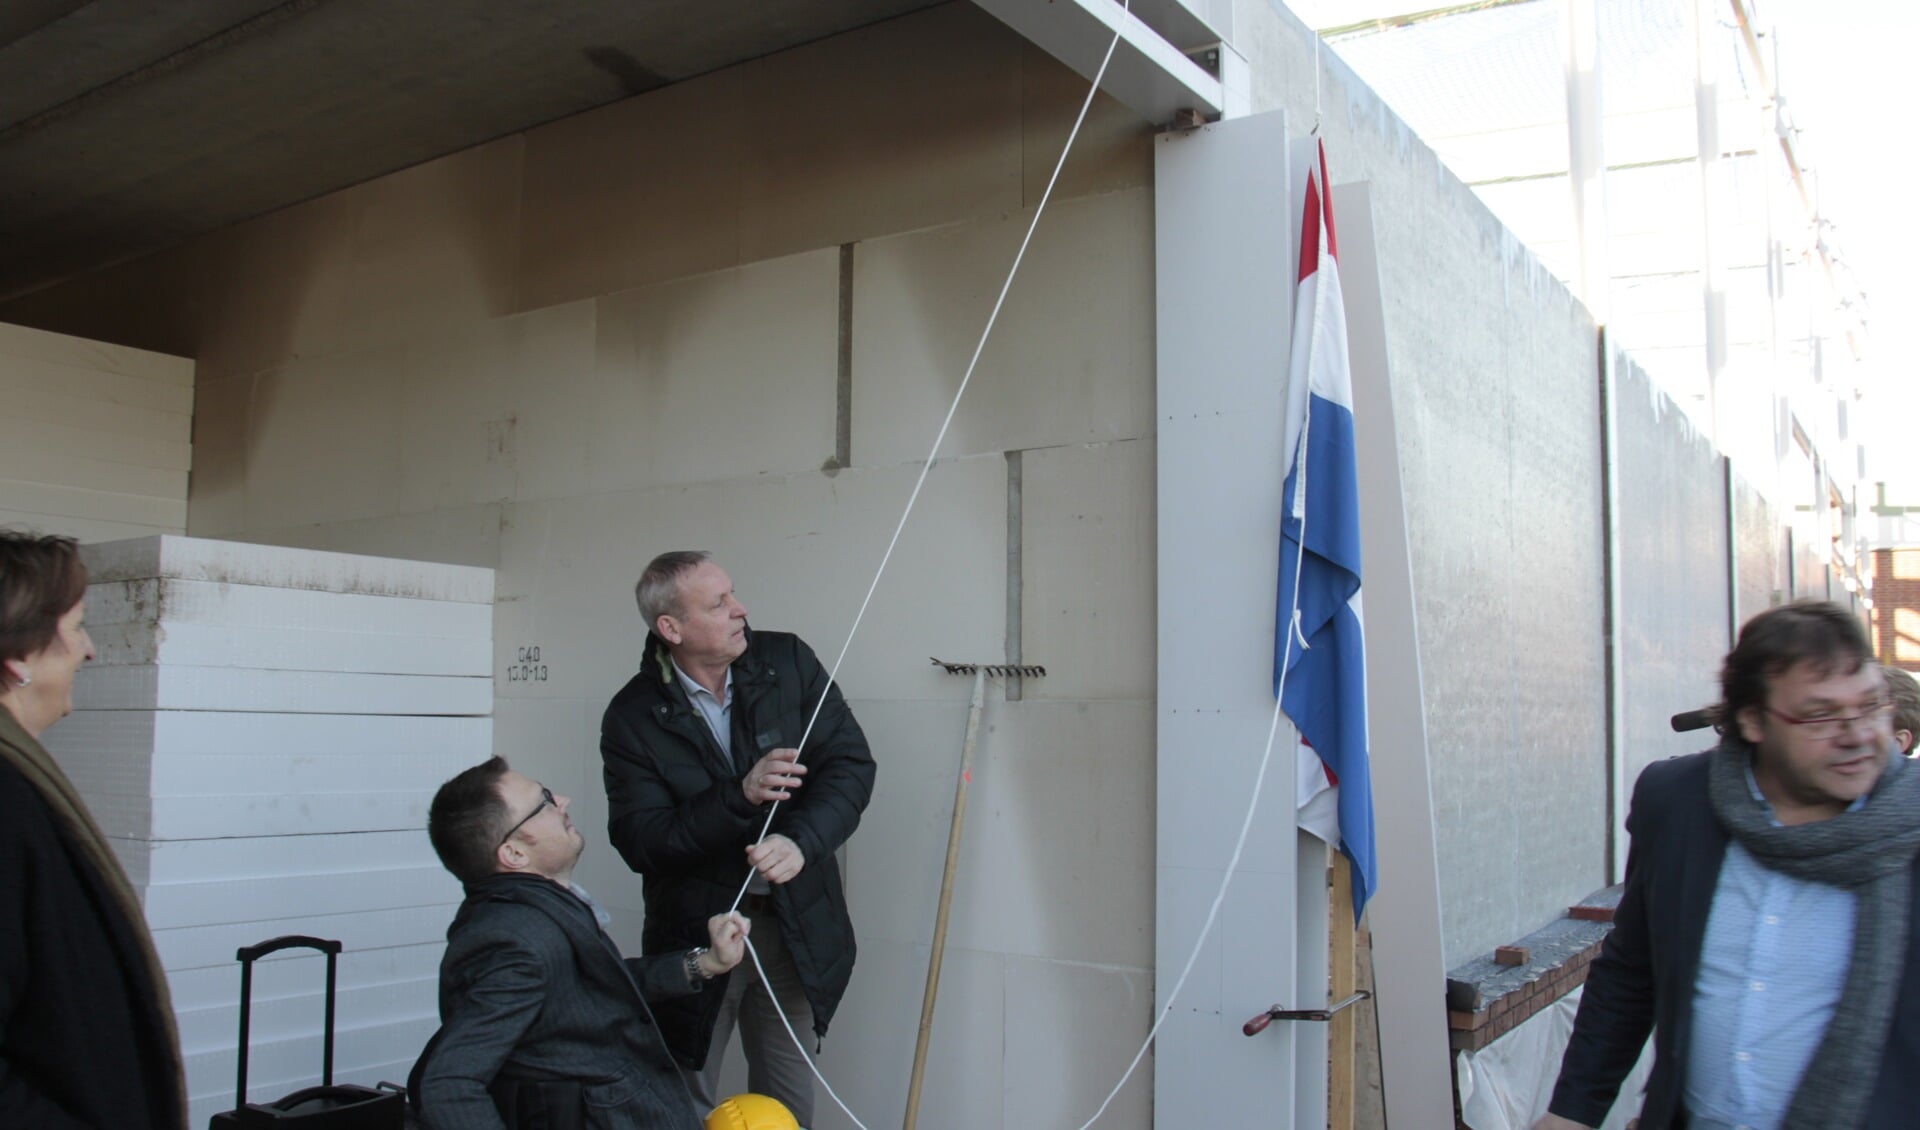 Otwin van Dijk hijst samen met wethouder Jos Hoendeboom de vlag. Foto: Eveline Zuurbier